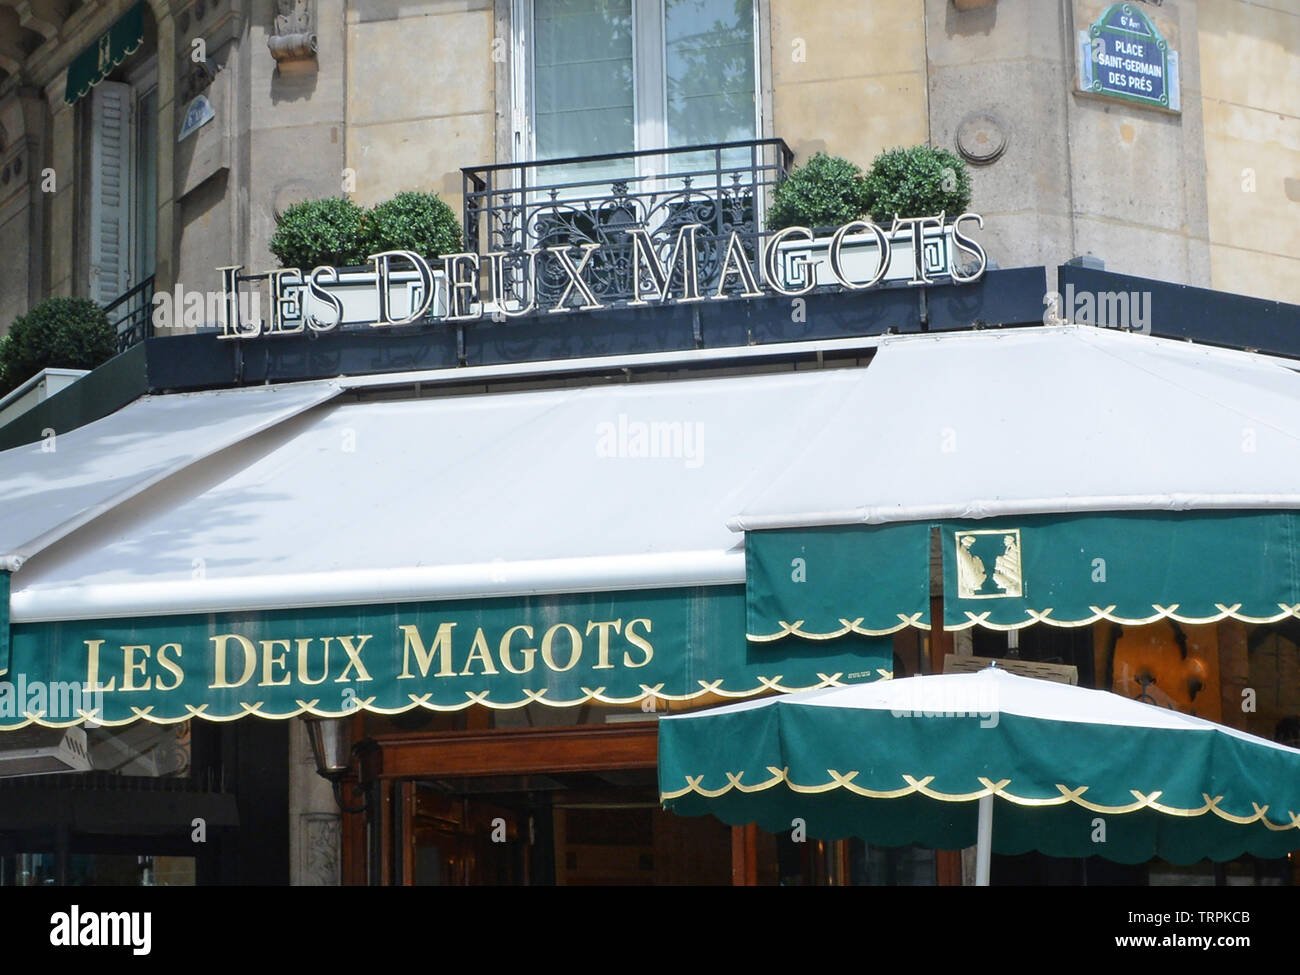 Les Deux Magots, bar restaurant, Saint-Germain-des-Près, Latin Quarter, Paris, France Stock Photo